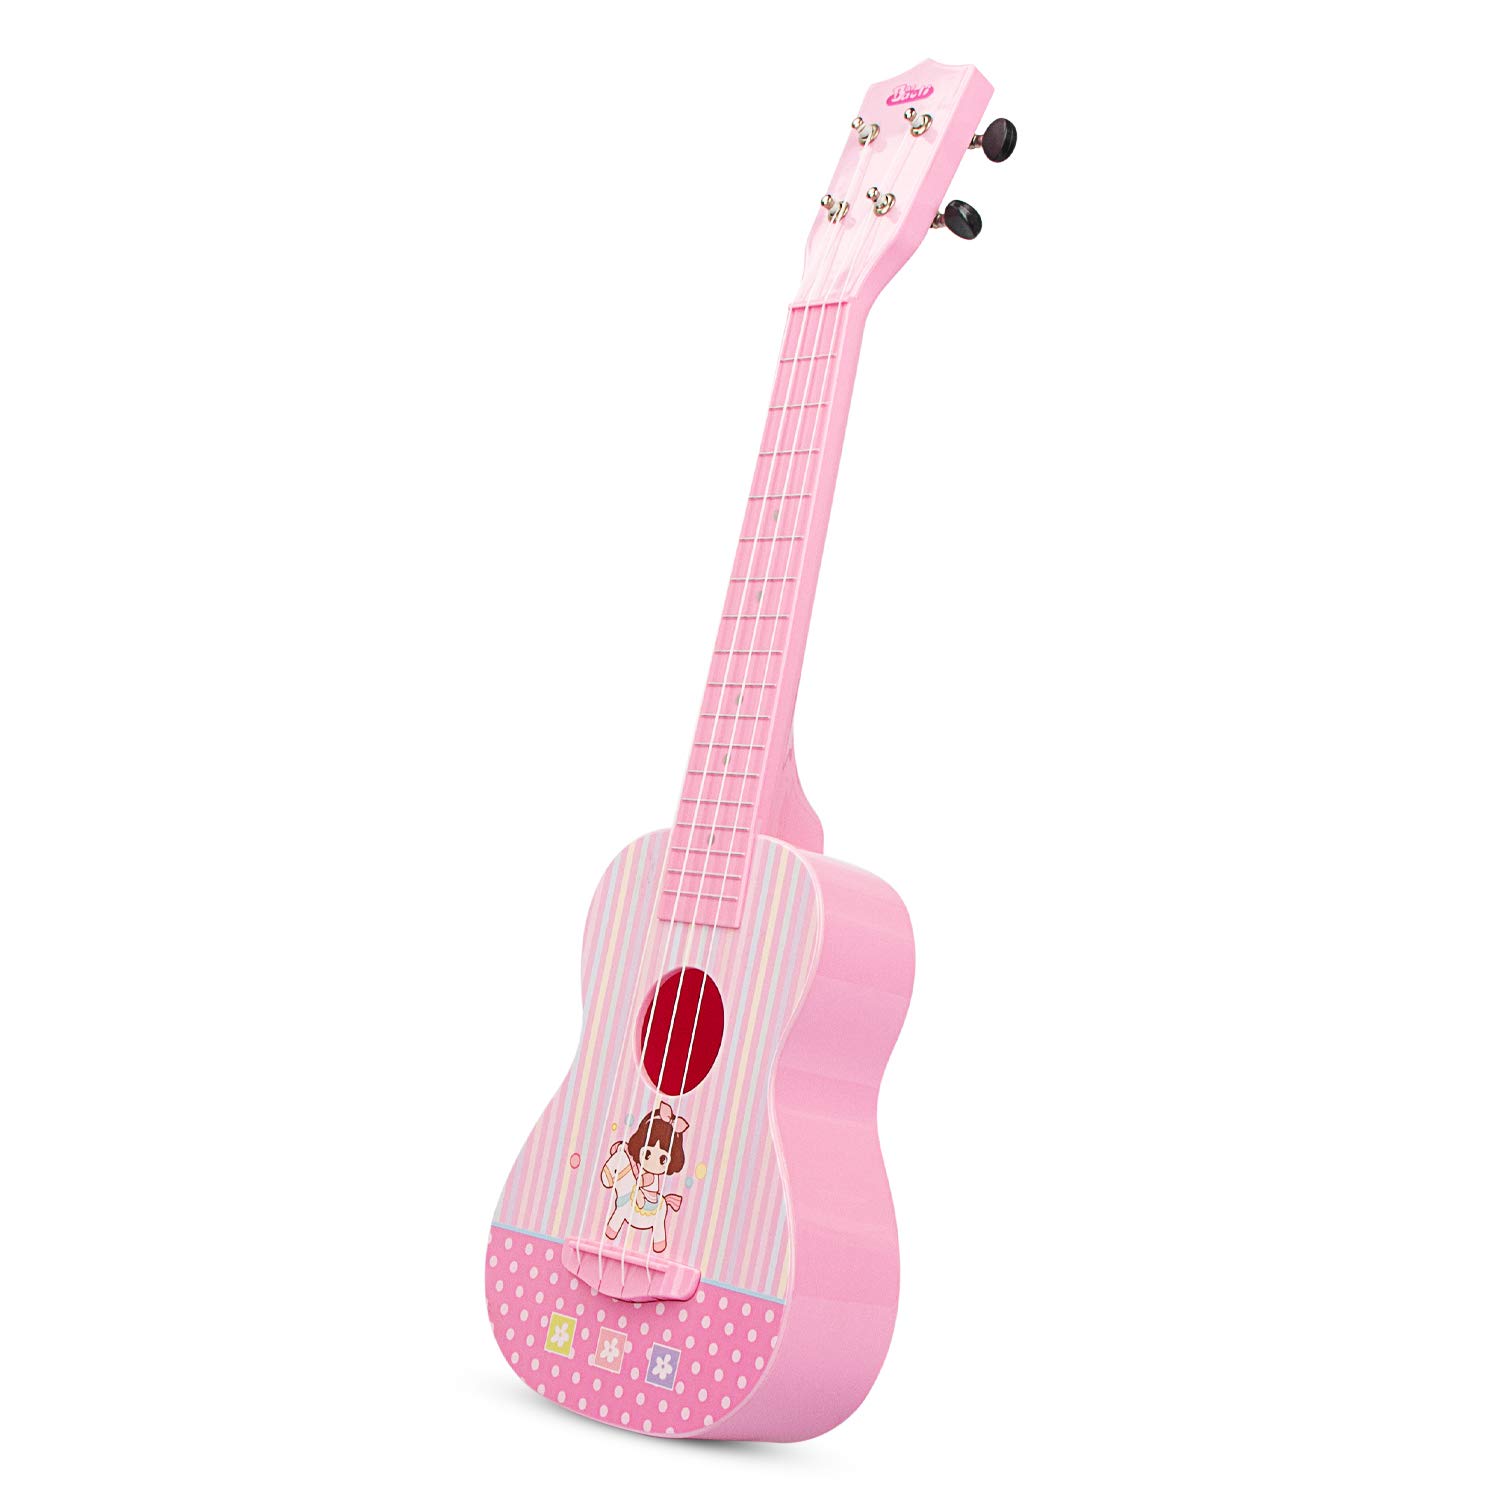 aPerfectLife Ukulele Guitar for Kids, 23 Inch Nylon-String Starter Classical Guitar for Beginner Children (Pink)